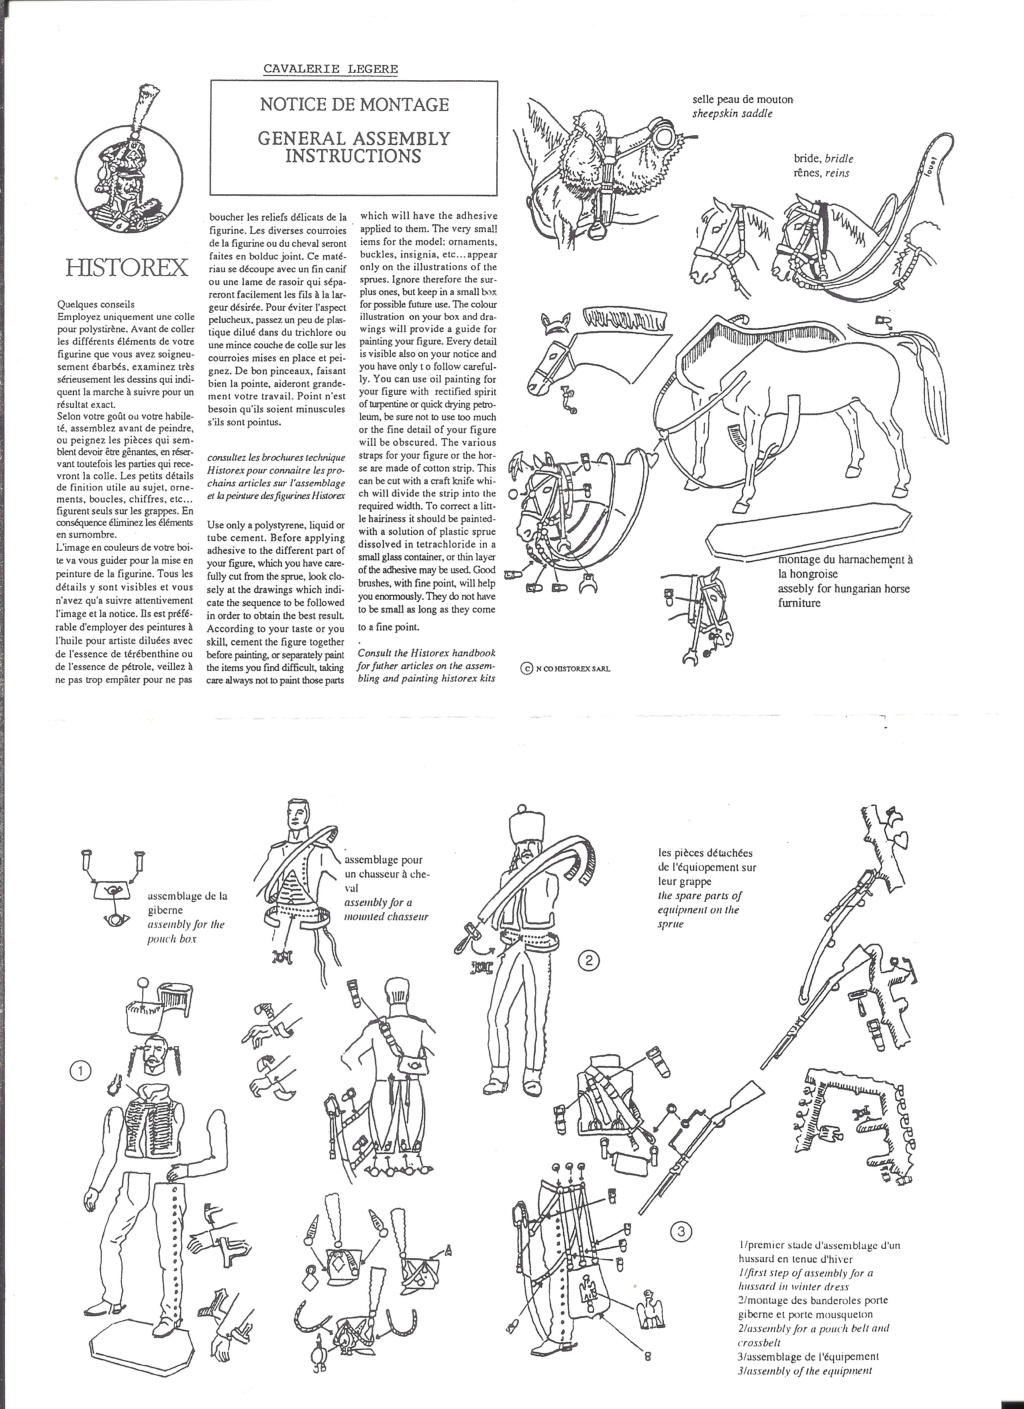 [HISTOREX] Chasseur à cheval de la Garde Impérial 1804 - 1815 1/30ème Réf 30010 Notice  Histo149